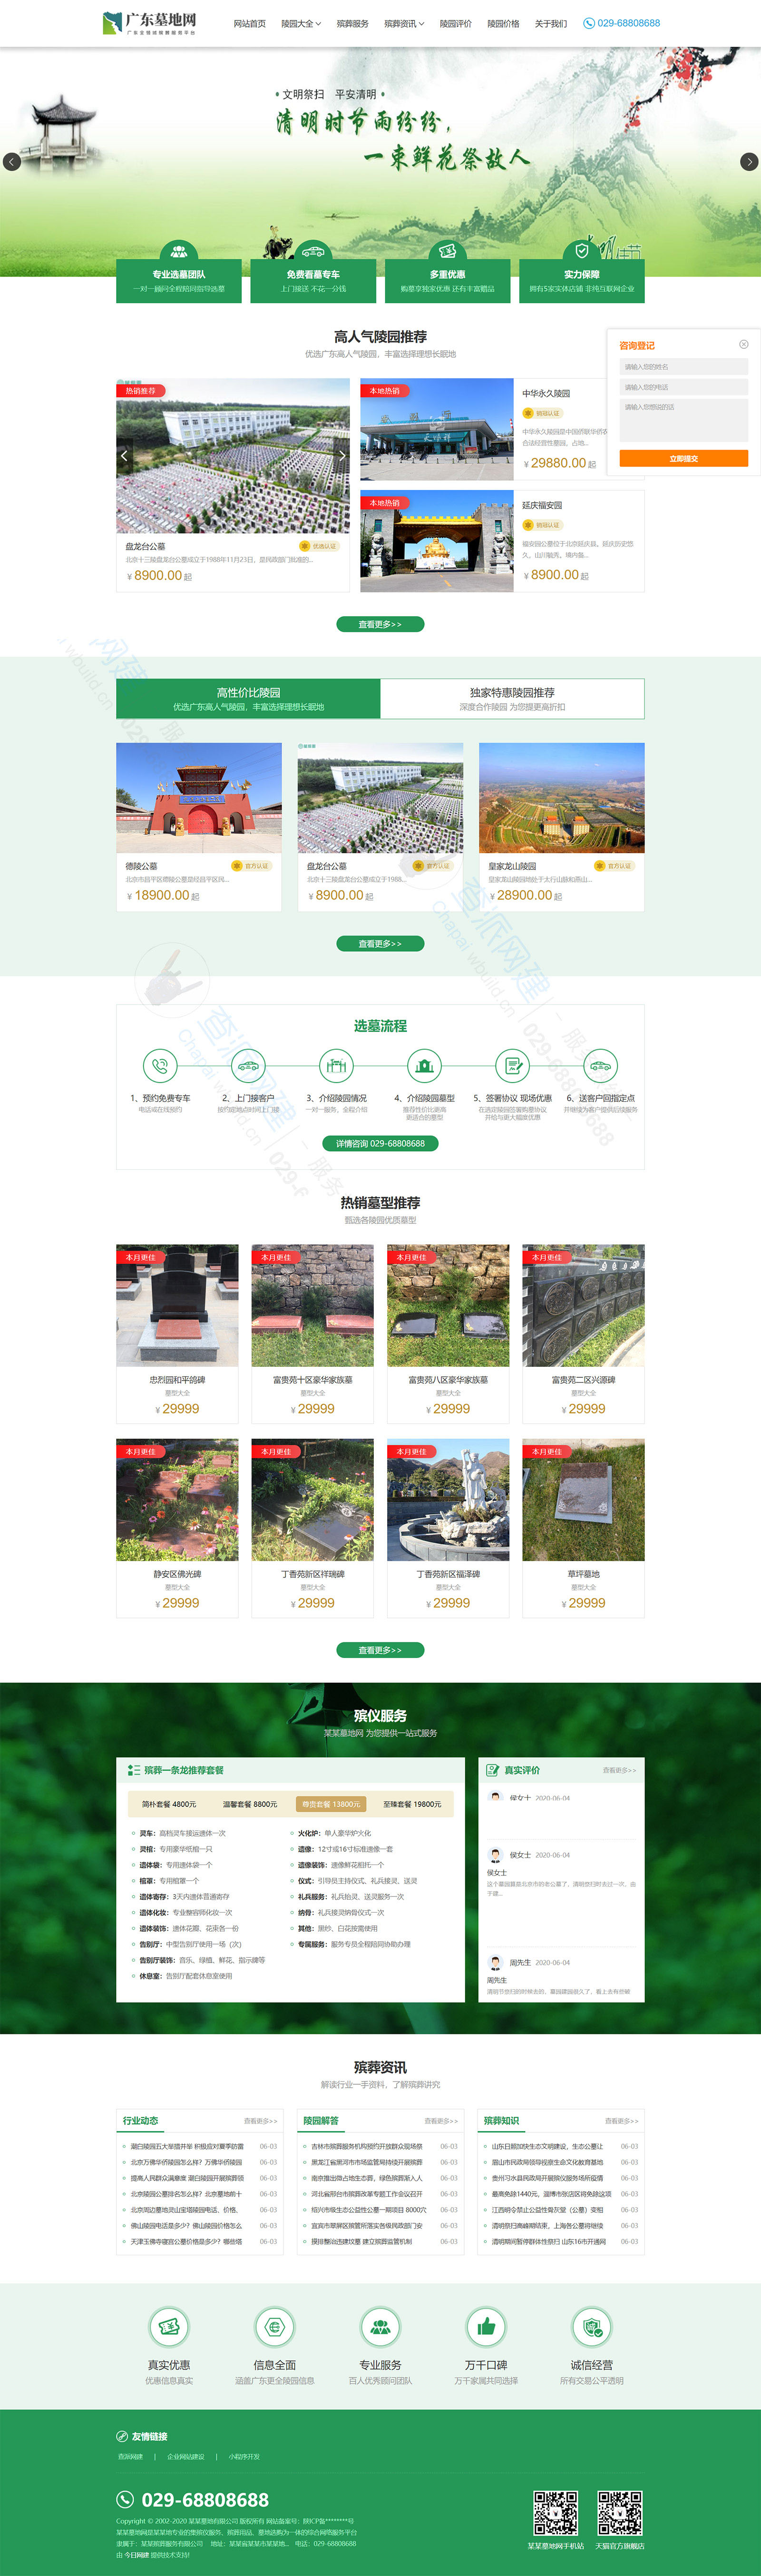 响应式/殡葬墓地行业类网站建设模板